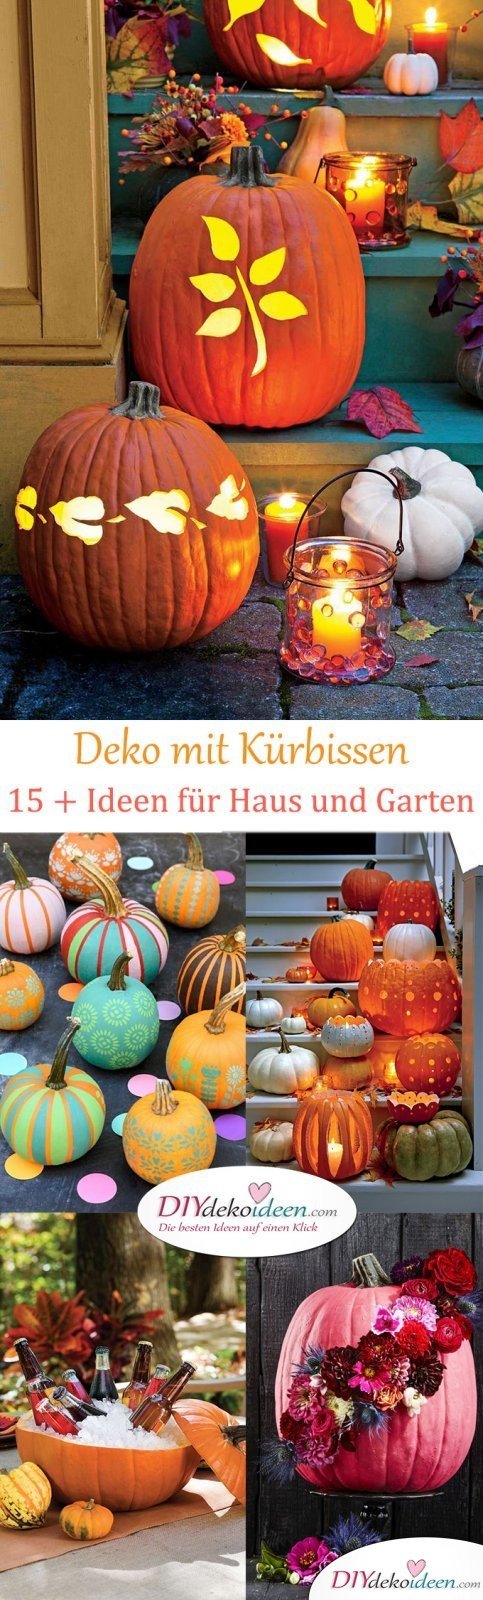 Deko mit Kürbissen im Herbst - Über 15 Dekoideen für Haus und Garten